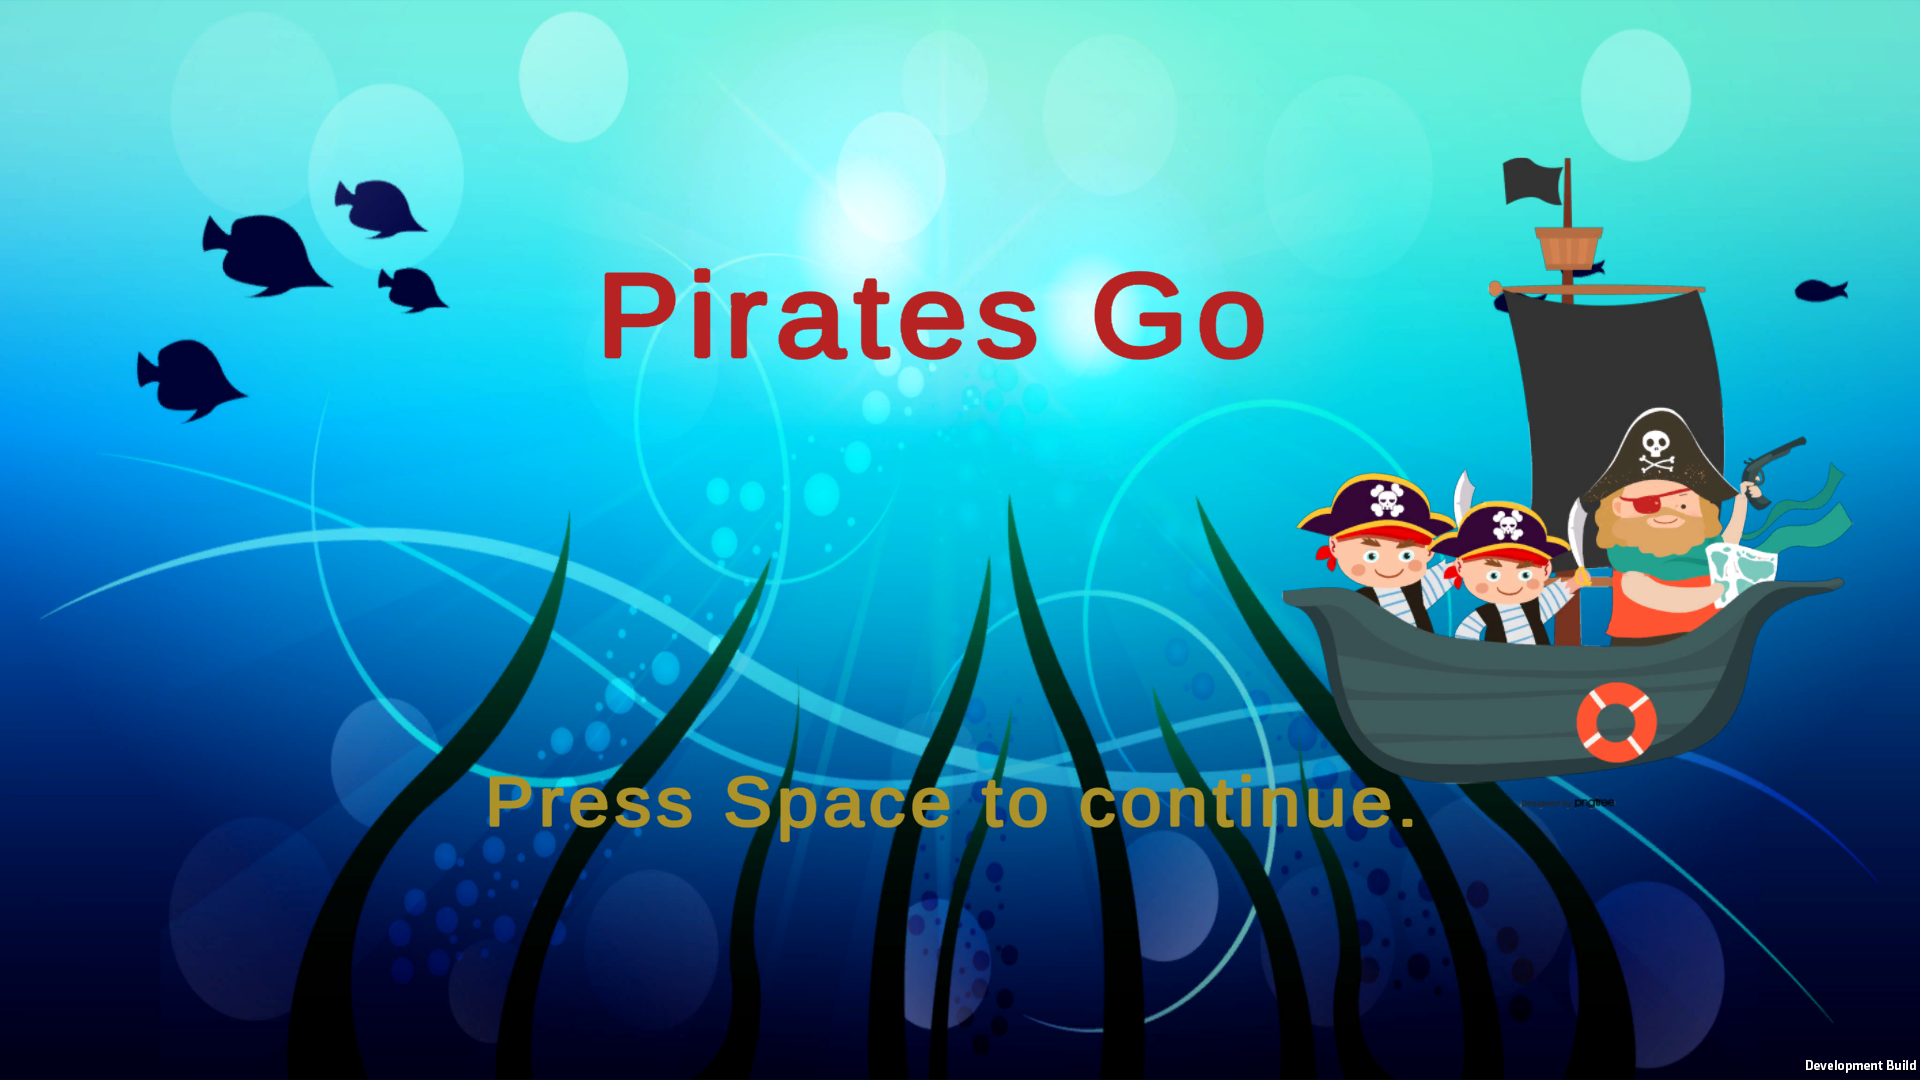 Pirates Go